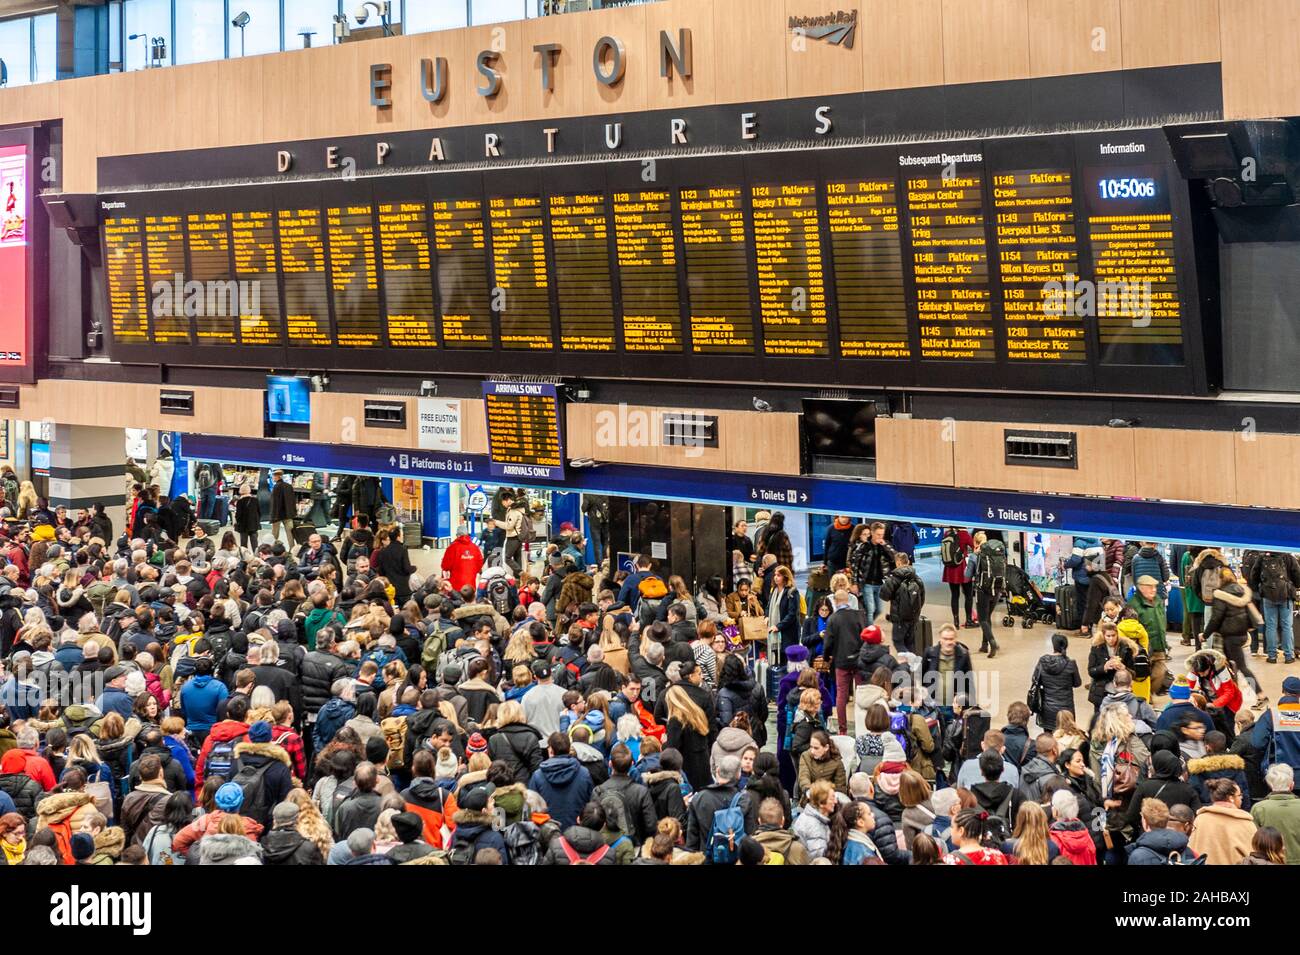 Grandes multitudes en la explanada de la estación de ferrocarril London Euston mirando la salida juntas. Londres, Inglaterra. Foto de stock